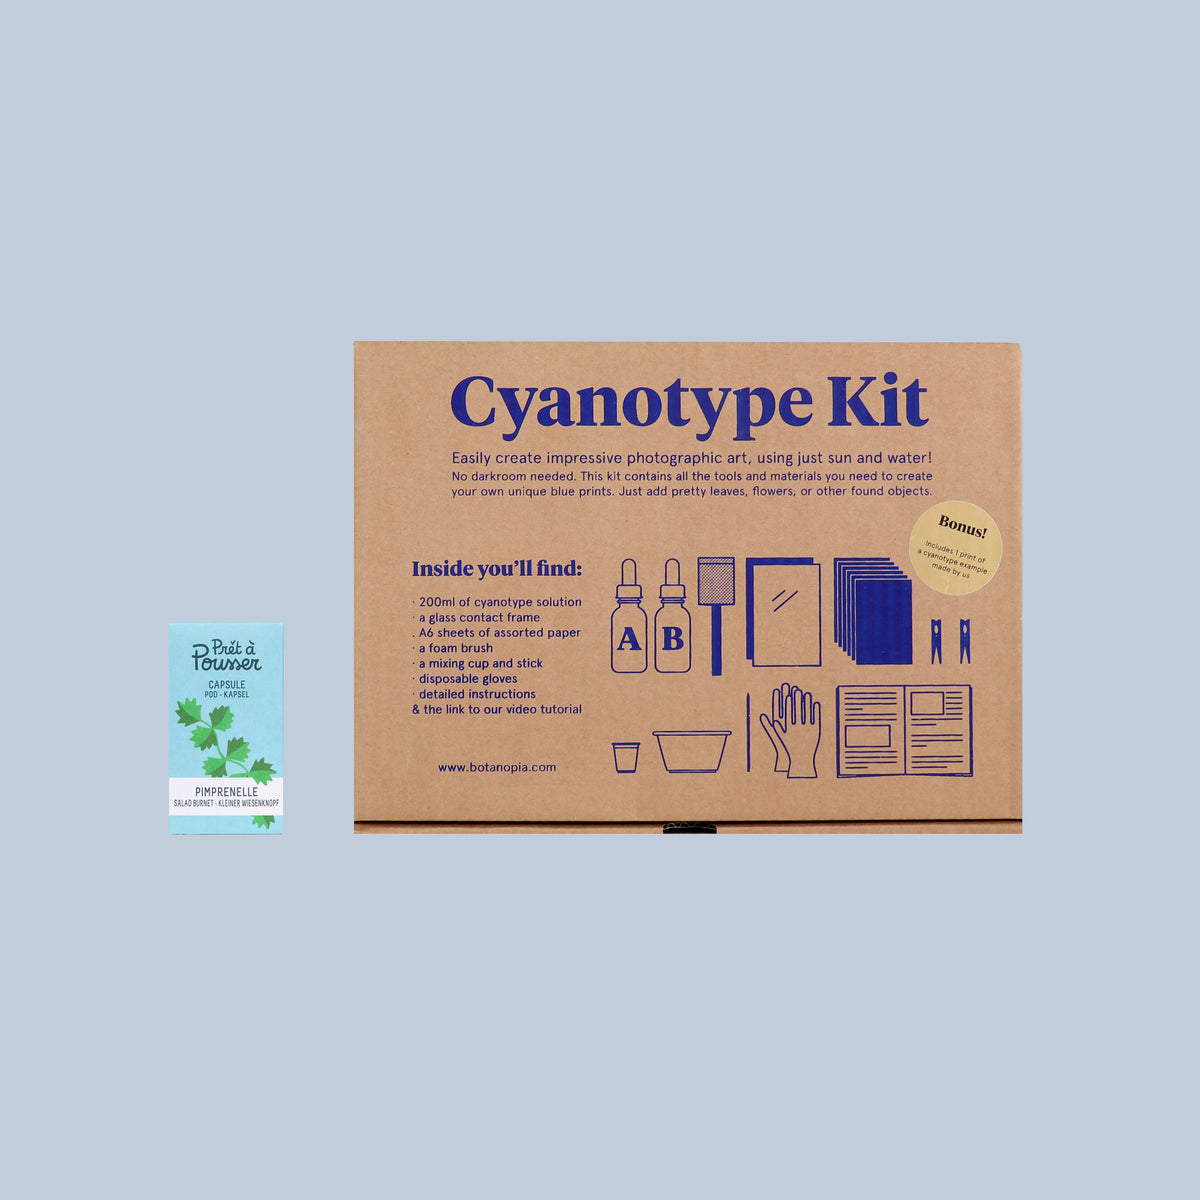 The Cyanotype set